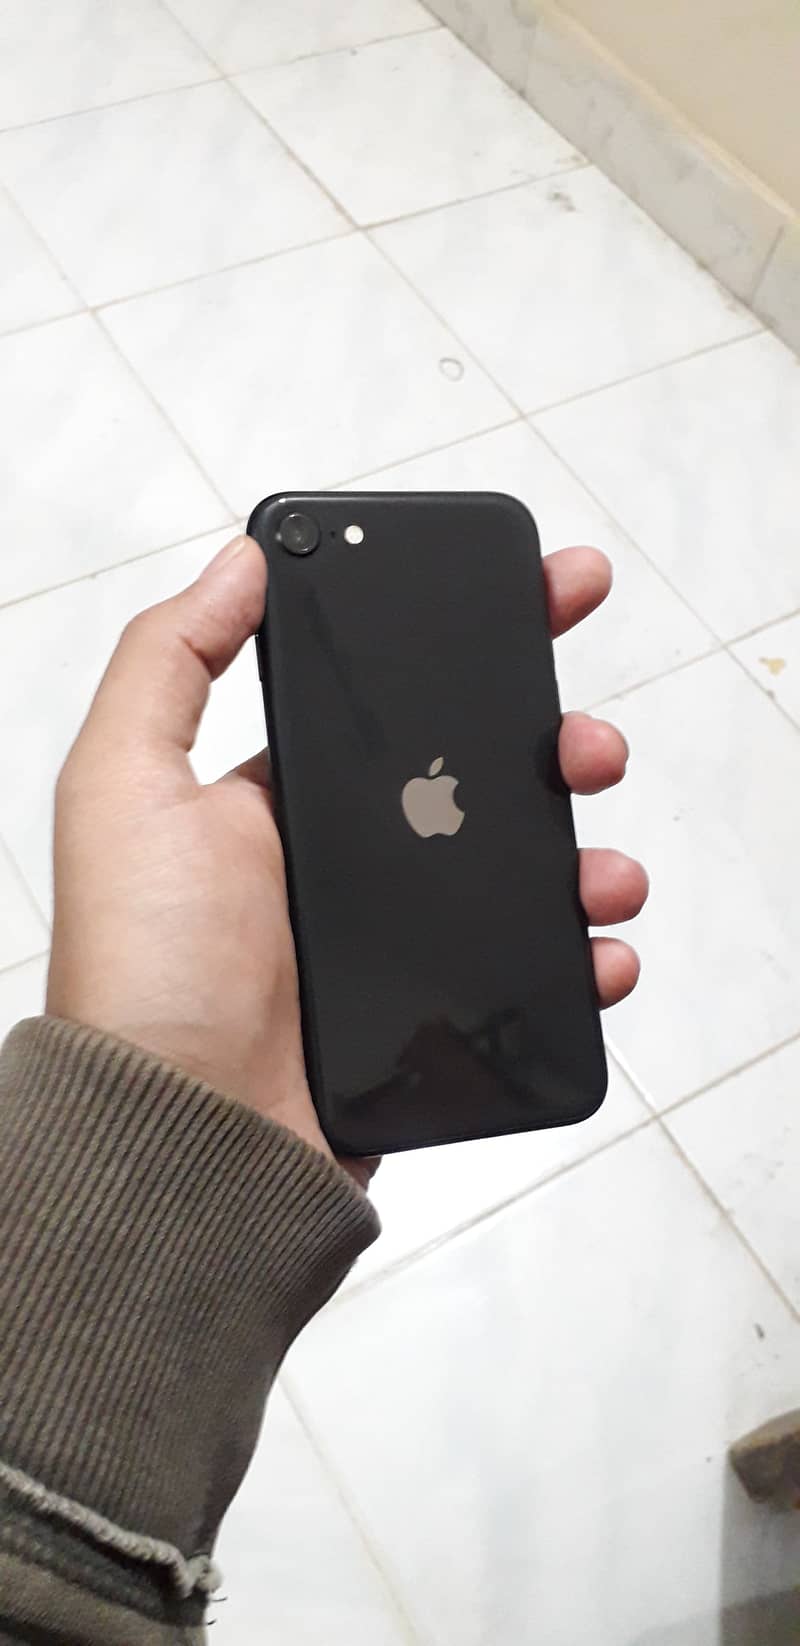 PTA approve Apple iPhone SE 2020 0